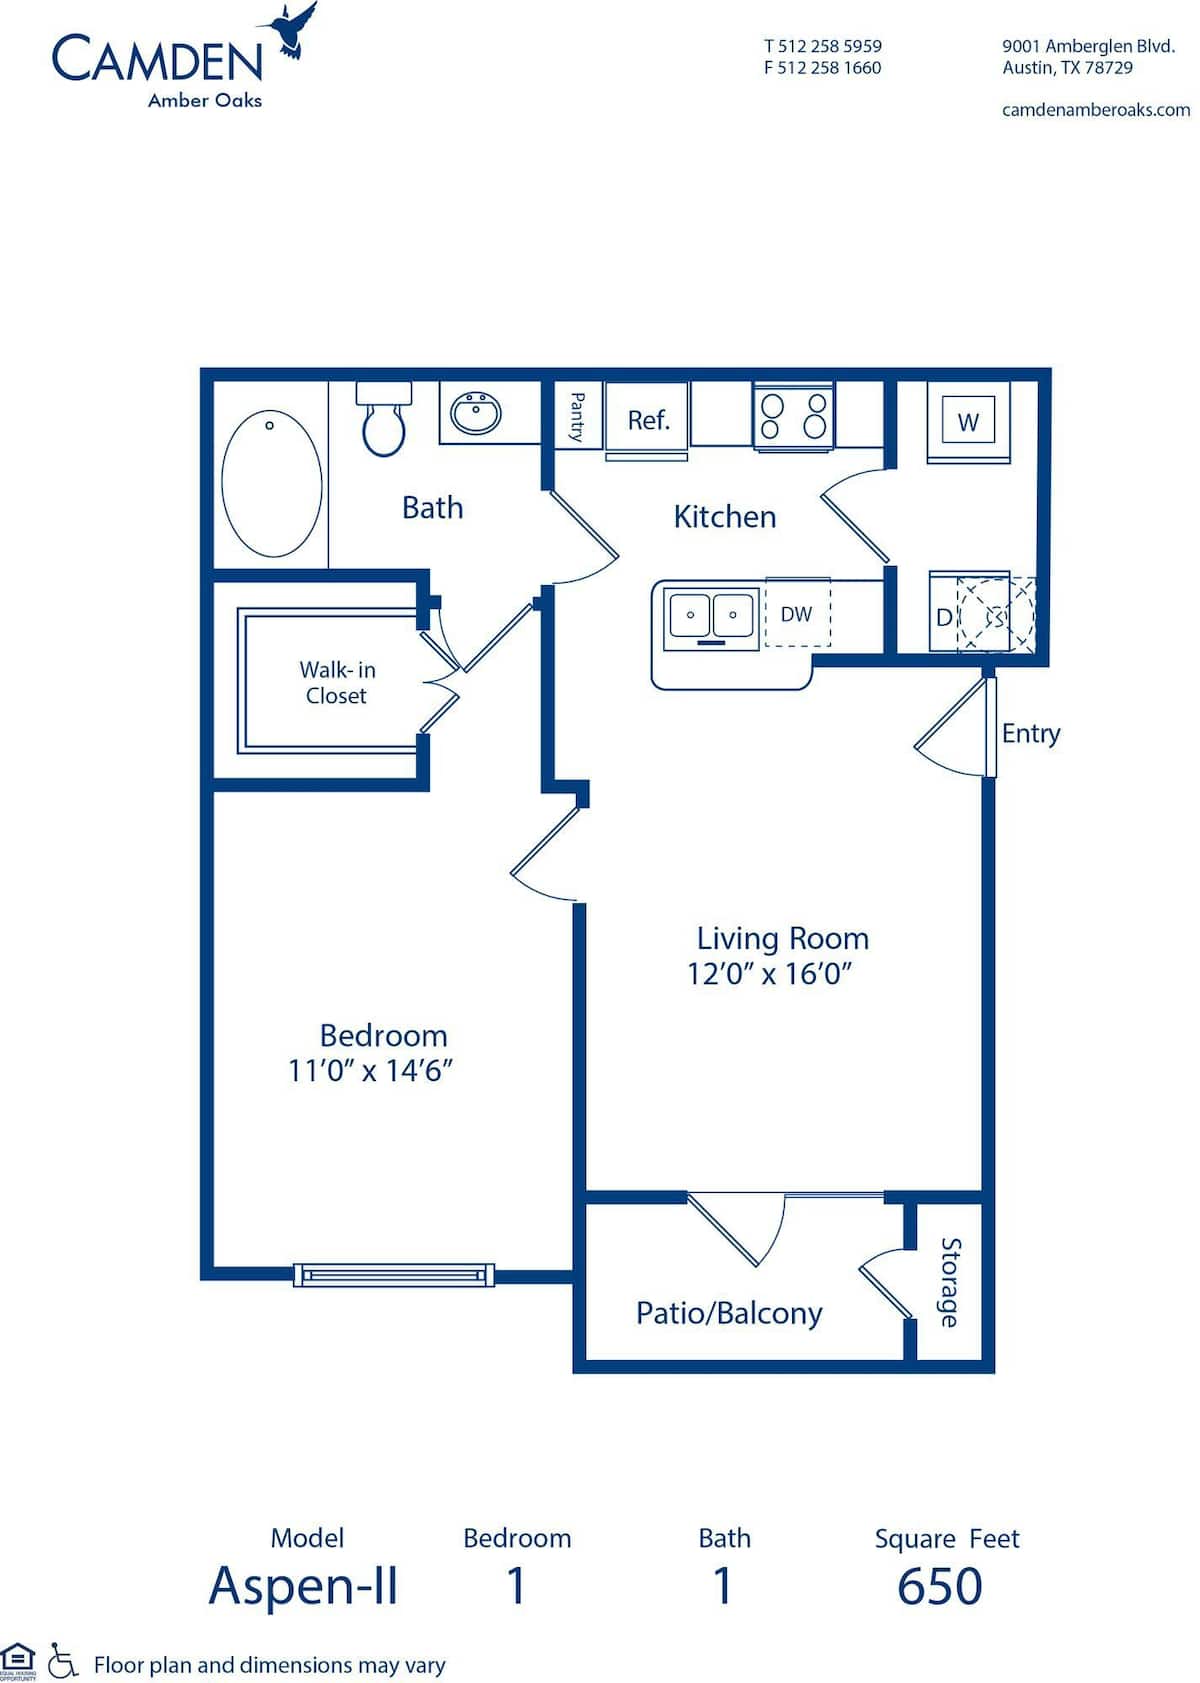 Floorplan diagram for Aspen - II, showing 1 bedroom